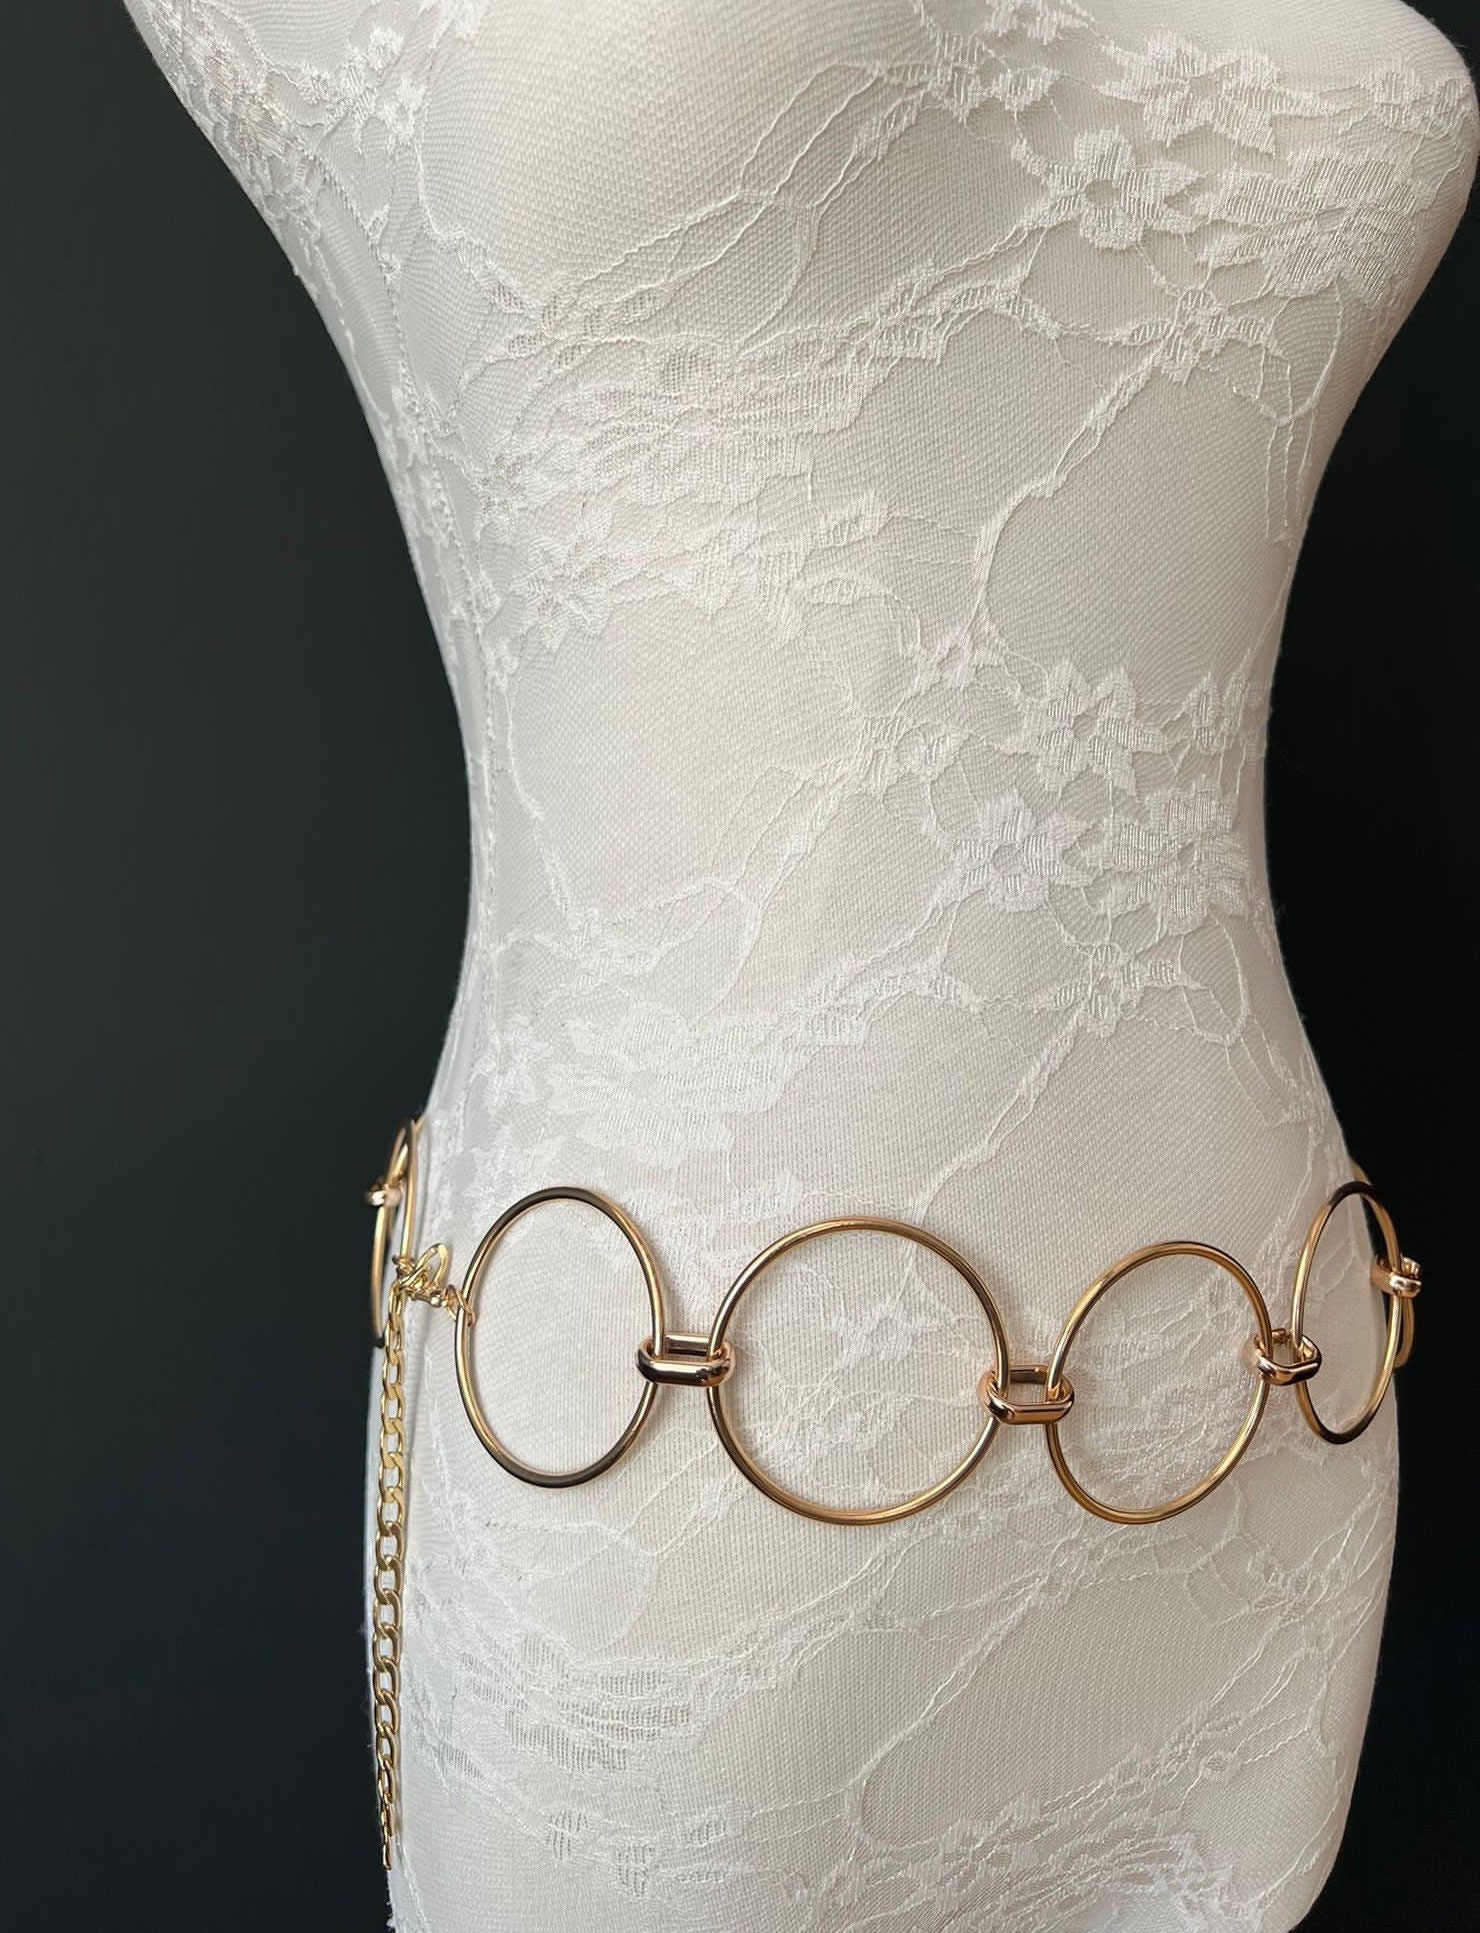 Gold Plaited Ladies Waist Chain Charm Fashion Belt 87 